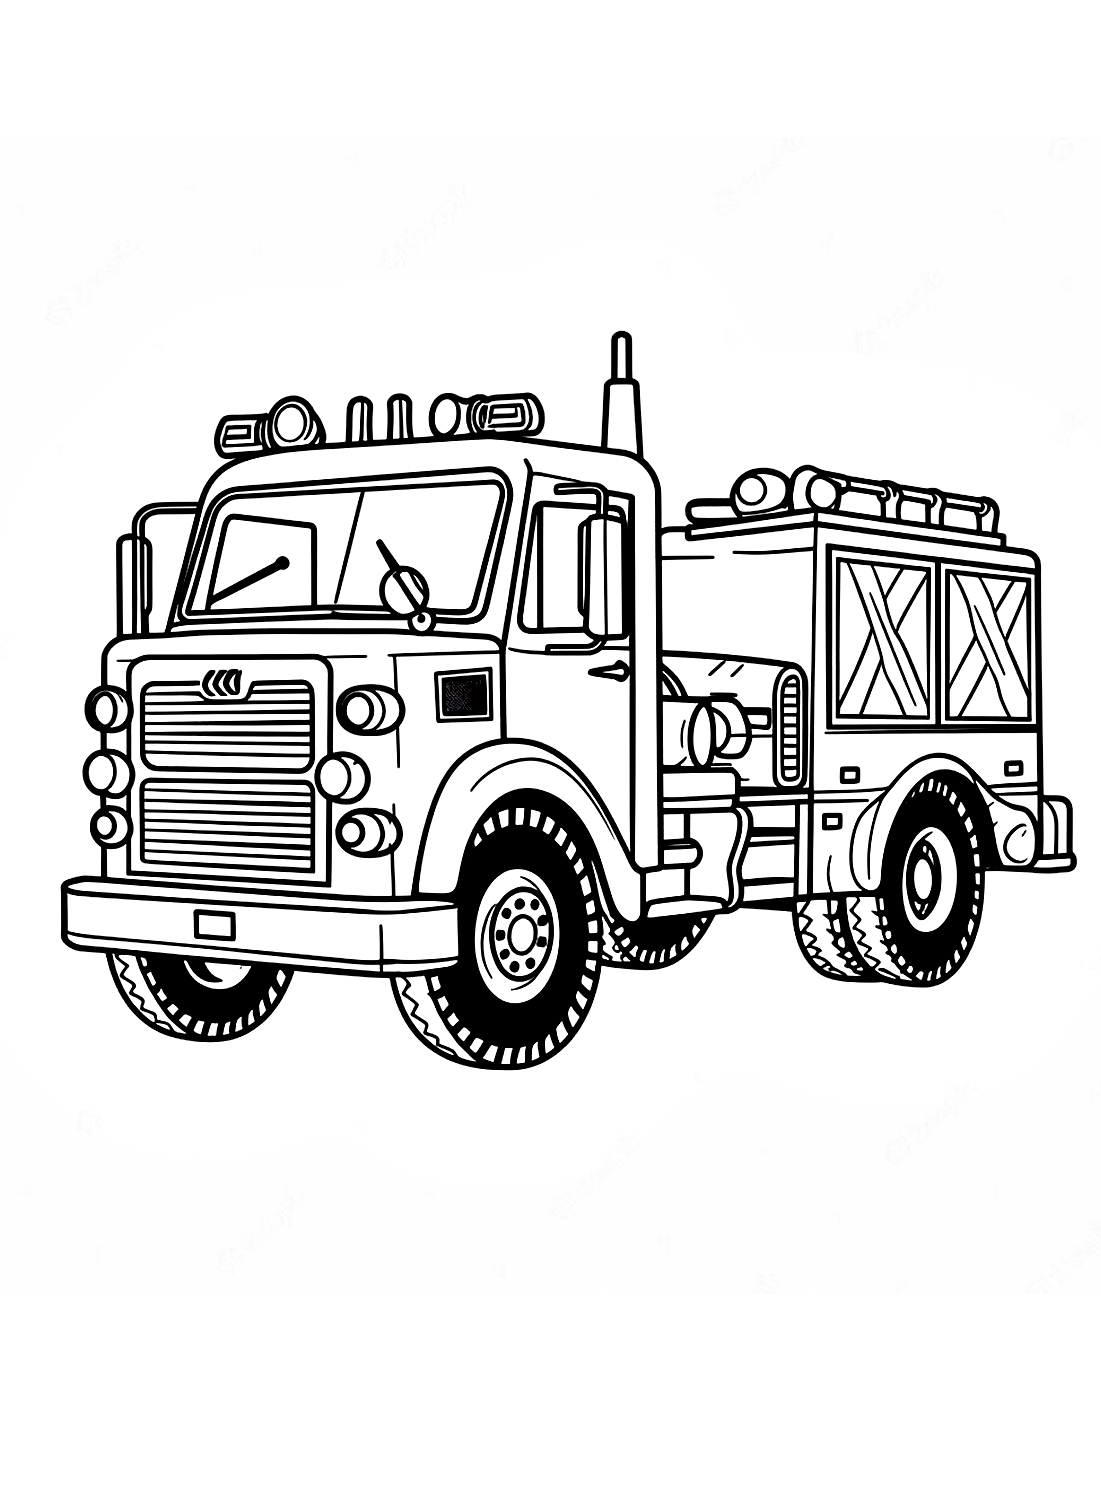 Malvorlagen Feuerwehrauto von Fire Truck